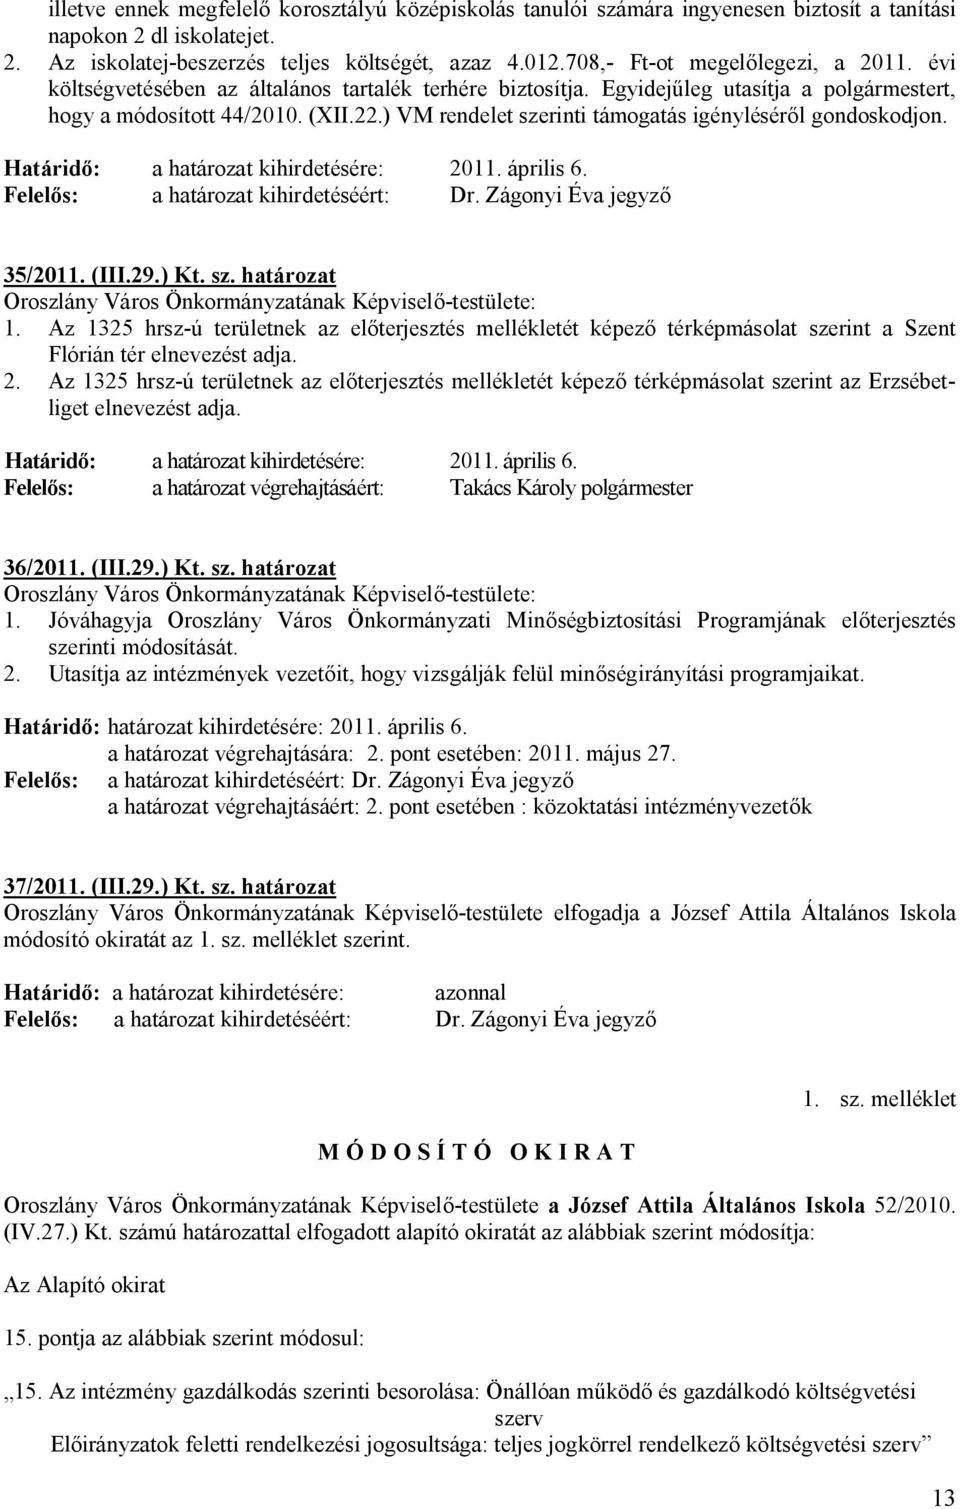 ) VM rendelet szerinti támogatás igényléséről gondoskodjon. Határidő: a határozat kihirdetésére: 2011. április 6. 35/2011. (III.29.) Kt. sz. határozat Oroszlány Város Önkormányzatának Képviselő-testülete: 1.